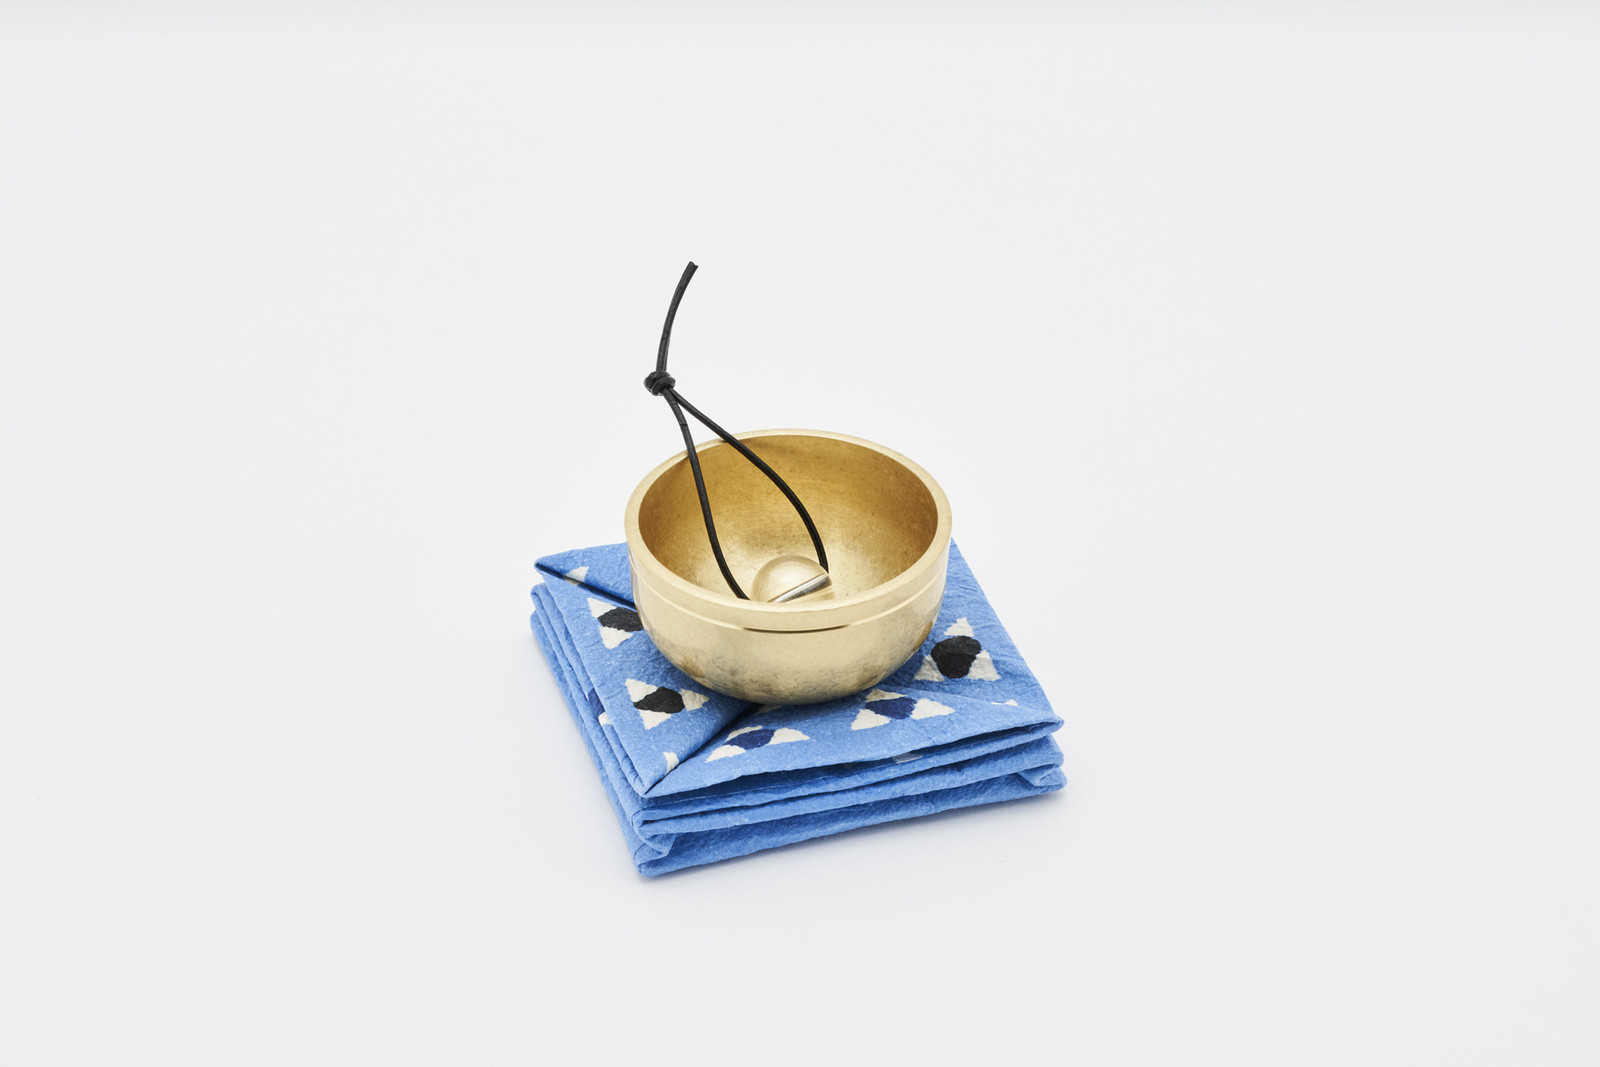 日本 山口久乘 铜合金碗铃 天然石手铃 玩赏铃铛 桌铃 摆件 礼品